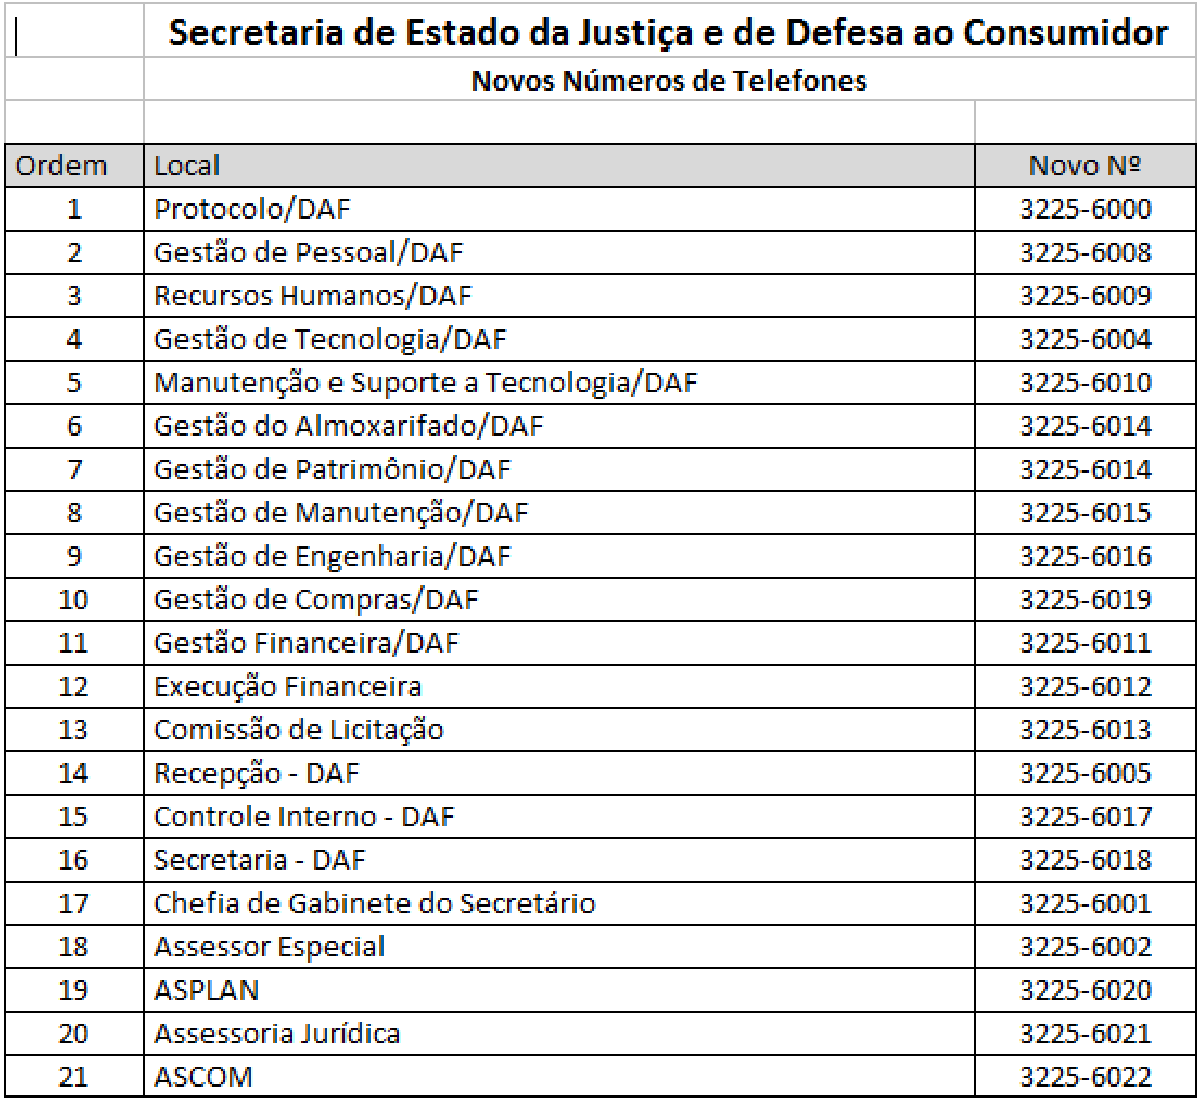 A partir da terça-feira, 18, estes serão nos novos números da Secretaria de Justiça e de Defesa ao Consumidor(Sejuc).